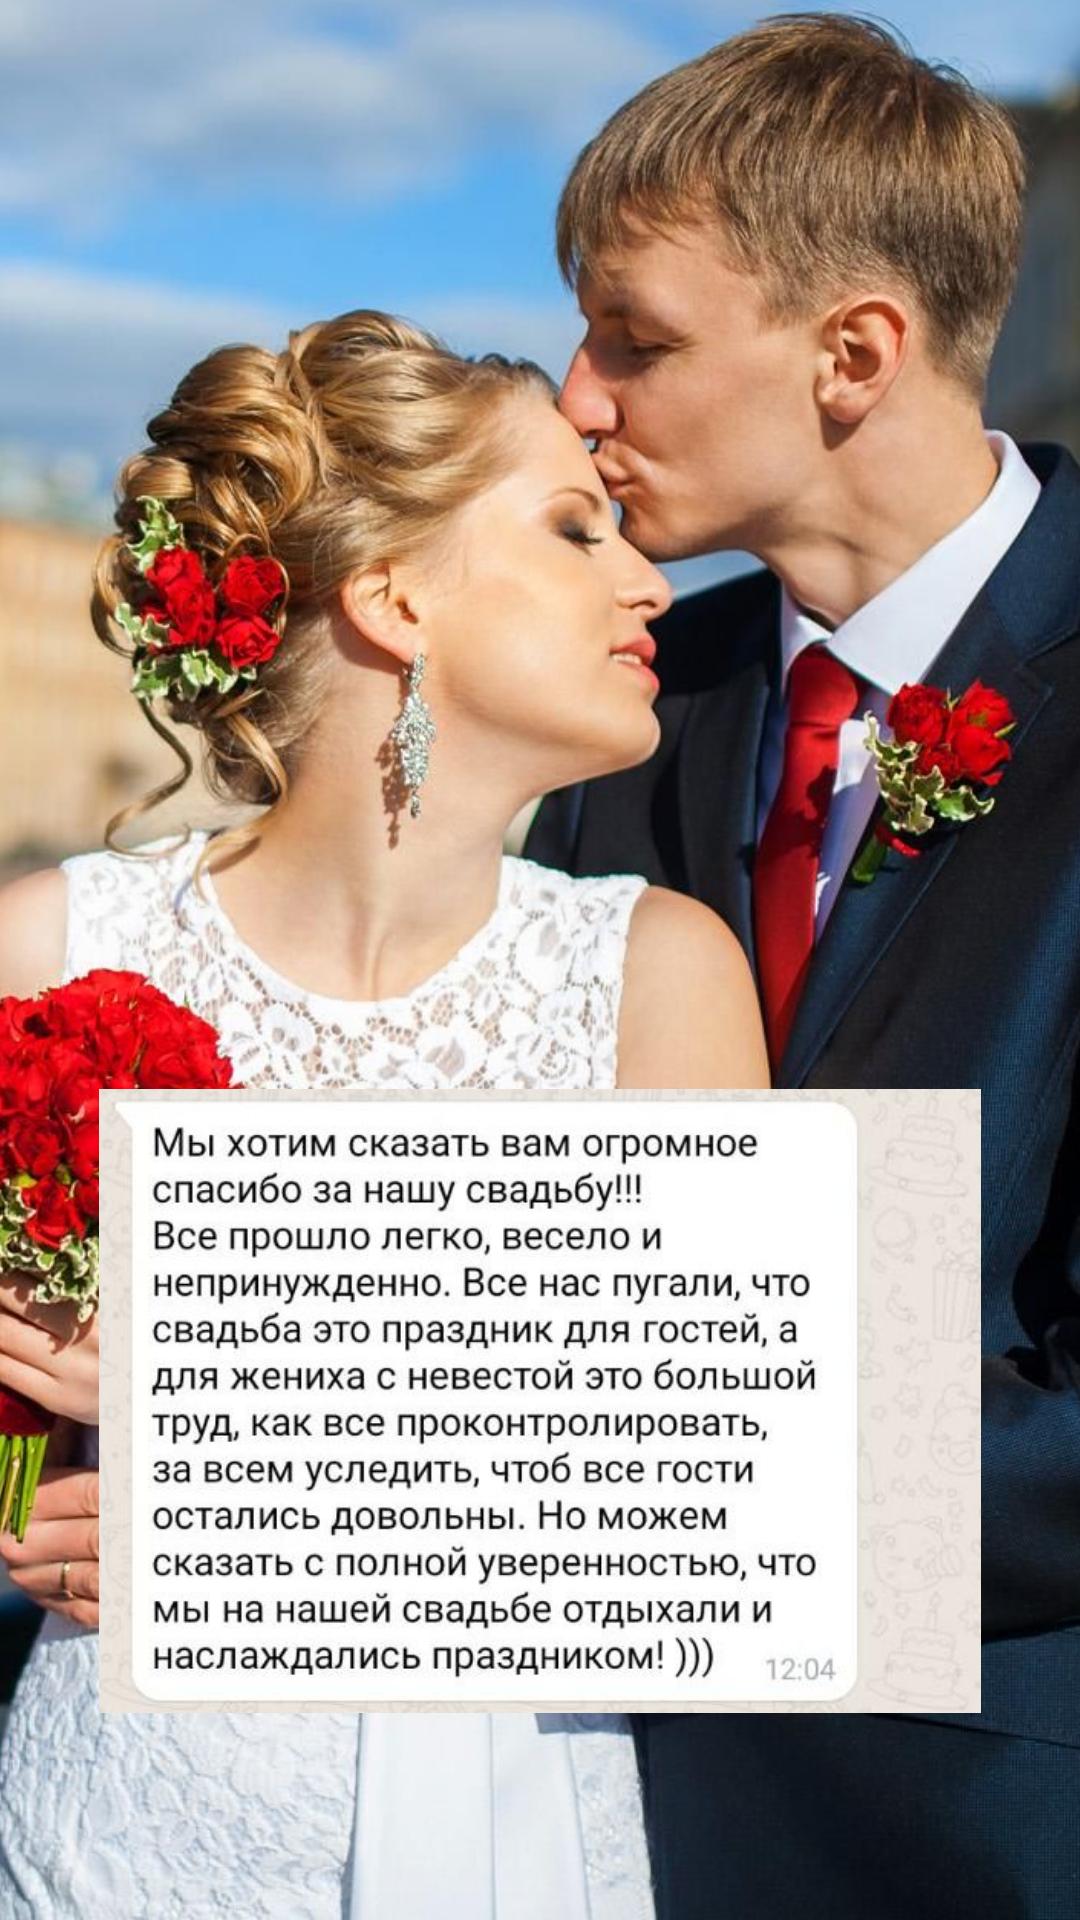 Организация свадьбы в Барнауле
от компании Pandaevent